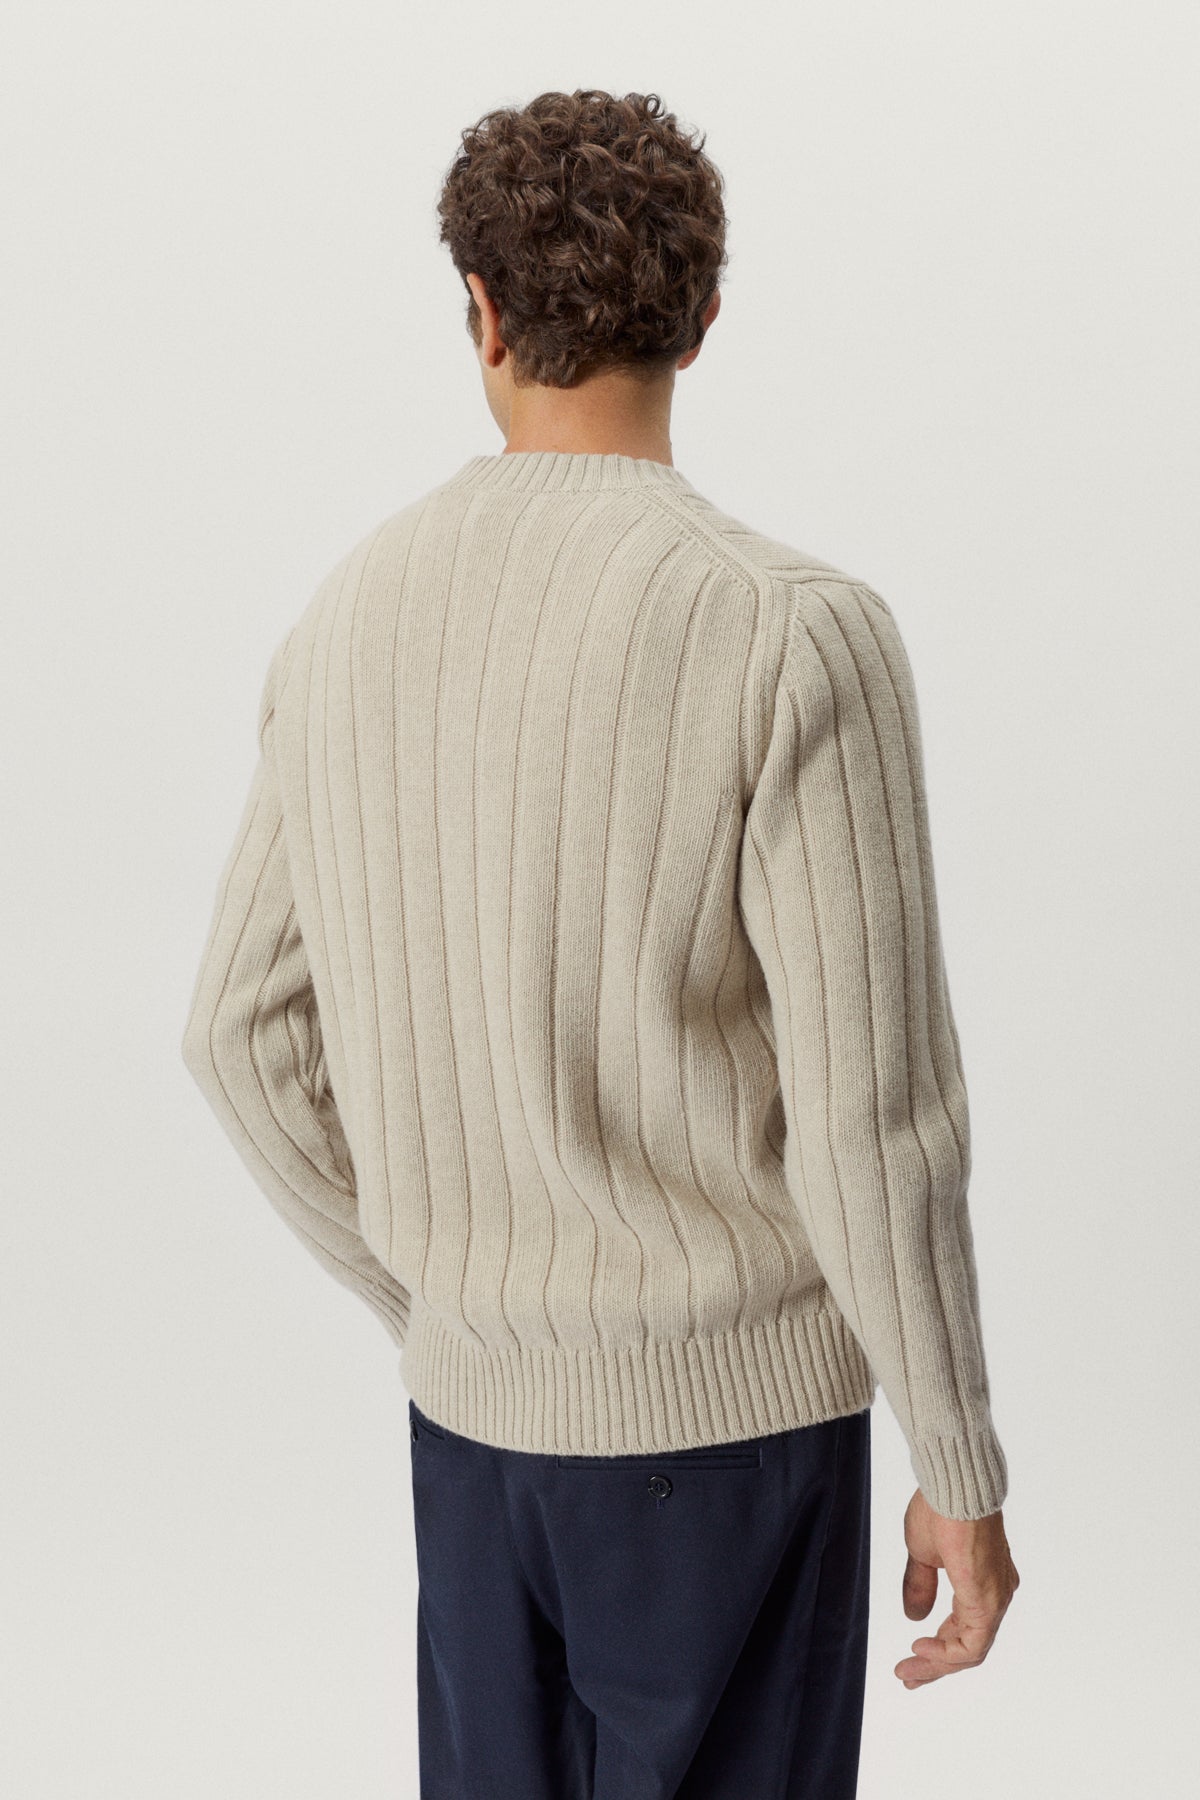 the woolen vintage v neck ecru